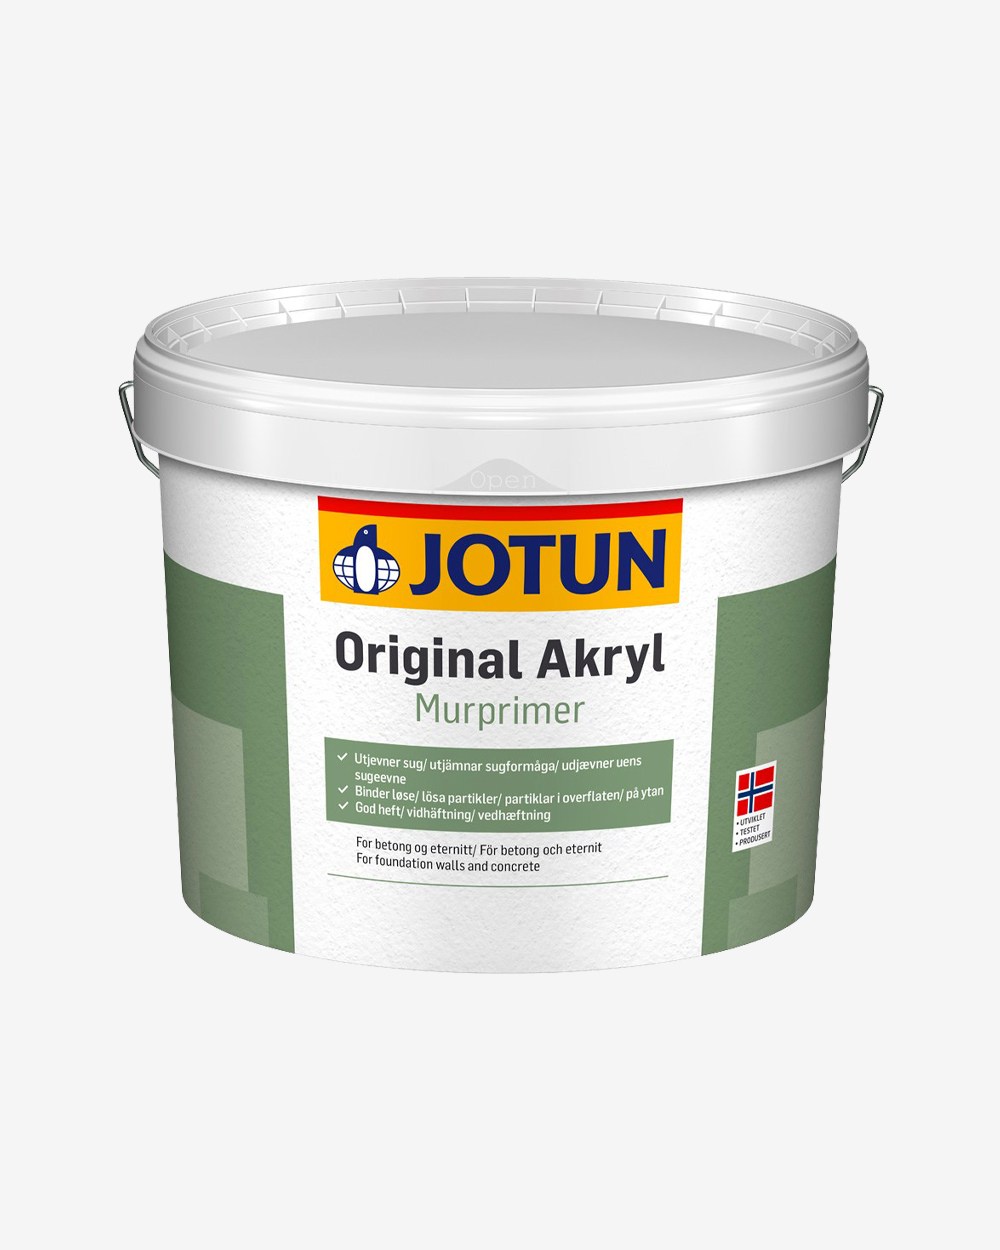 Jotun Original Akryl Murprimer - 10 L